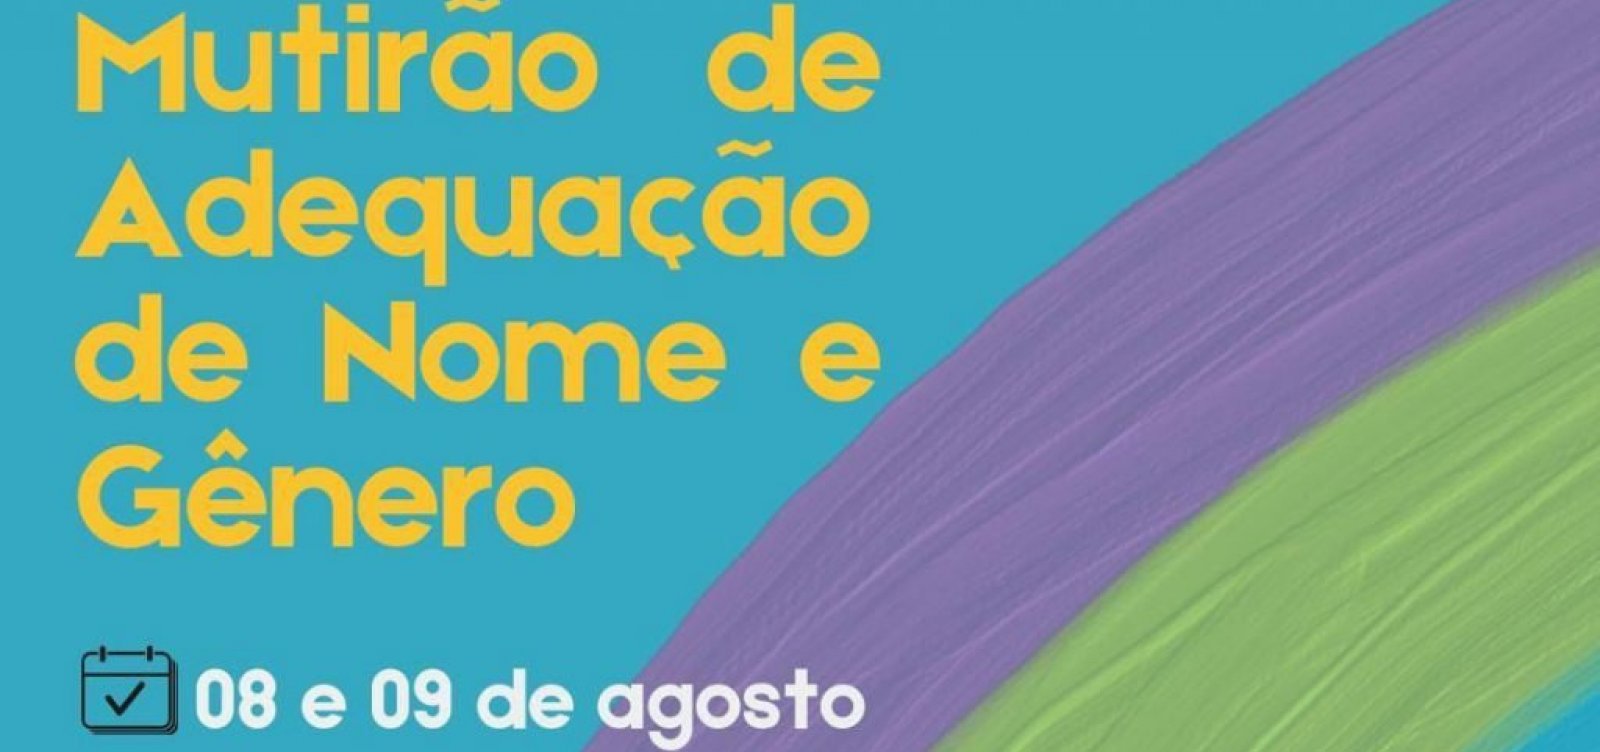 Defensoria Pública promove mutirão de adequação de nome e gênero em Ipiaú